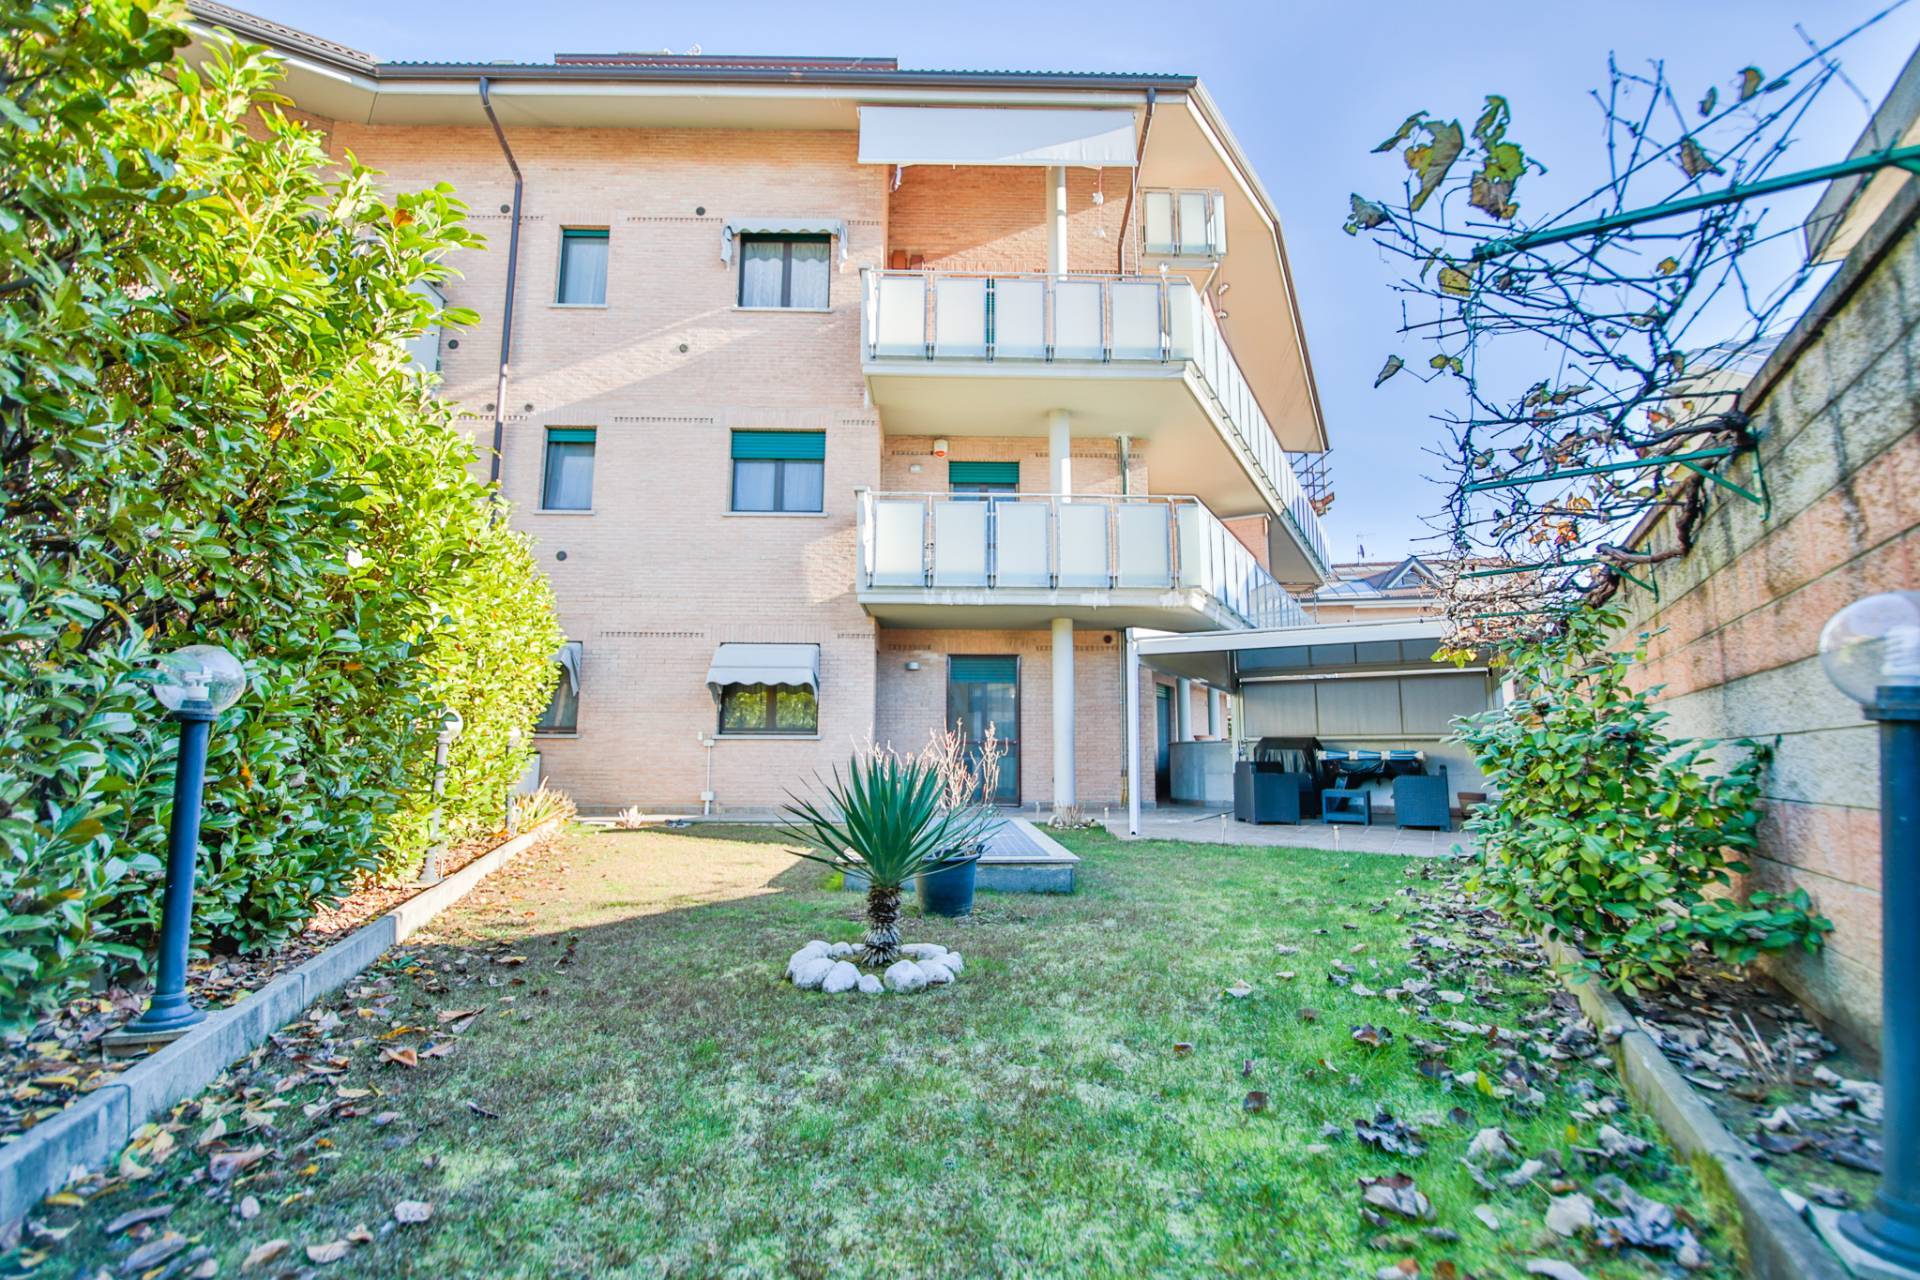 Appartamento in vendita a Volpiano, 4 locali, prezzo € 235.000 | PortaleAgenzieImmobiliari.it